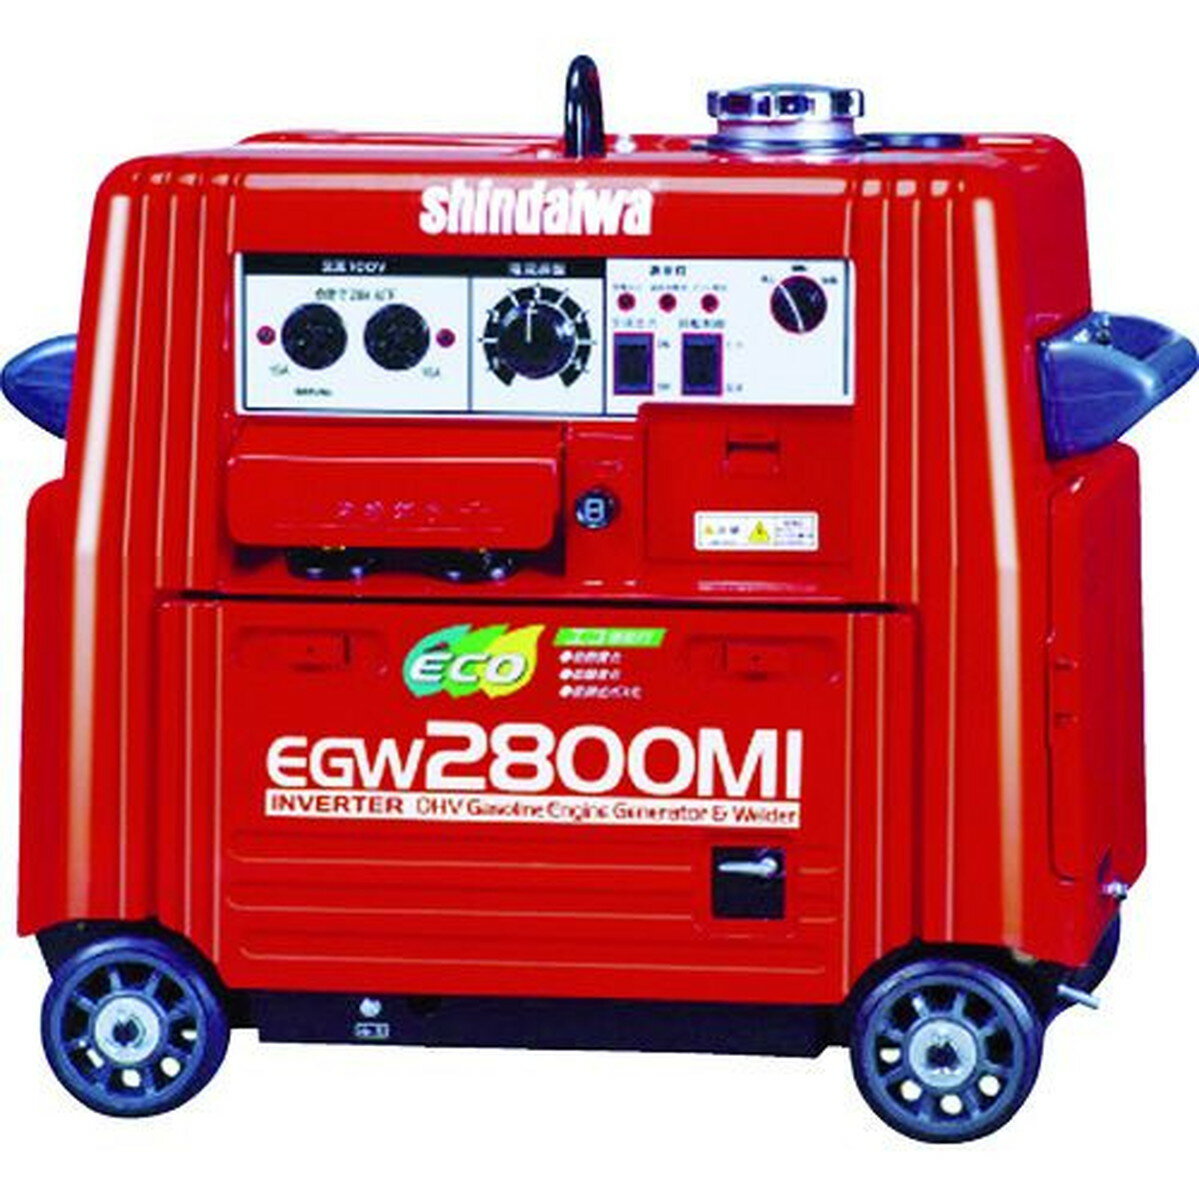 新ダイワ ガソリンエンジン発電機兼用溶接機 1台 (EGW2800MI)